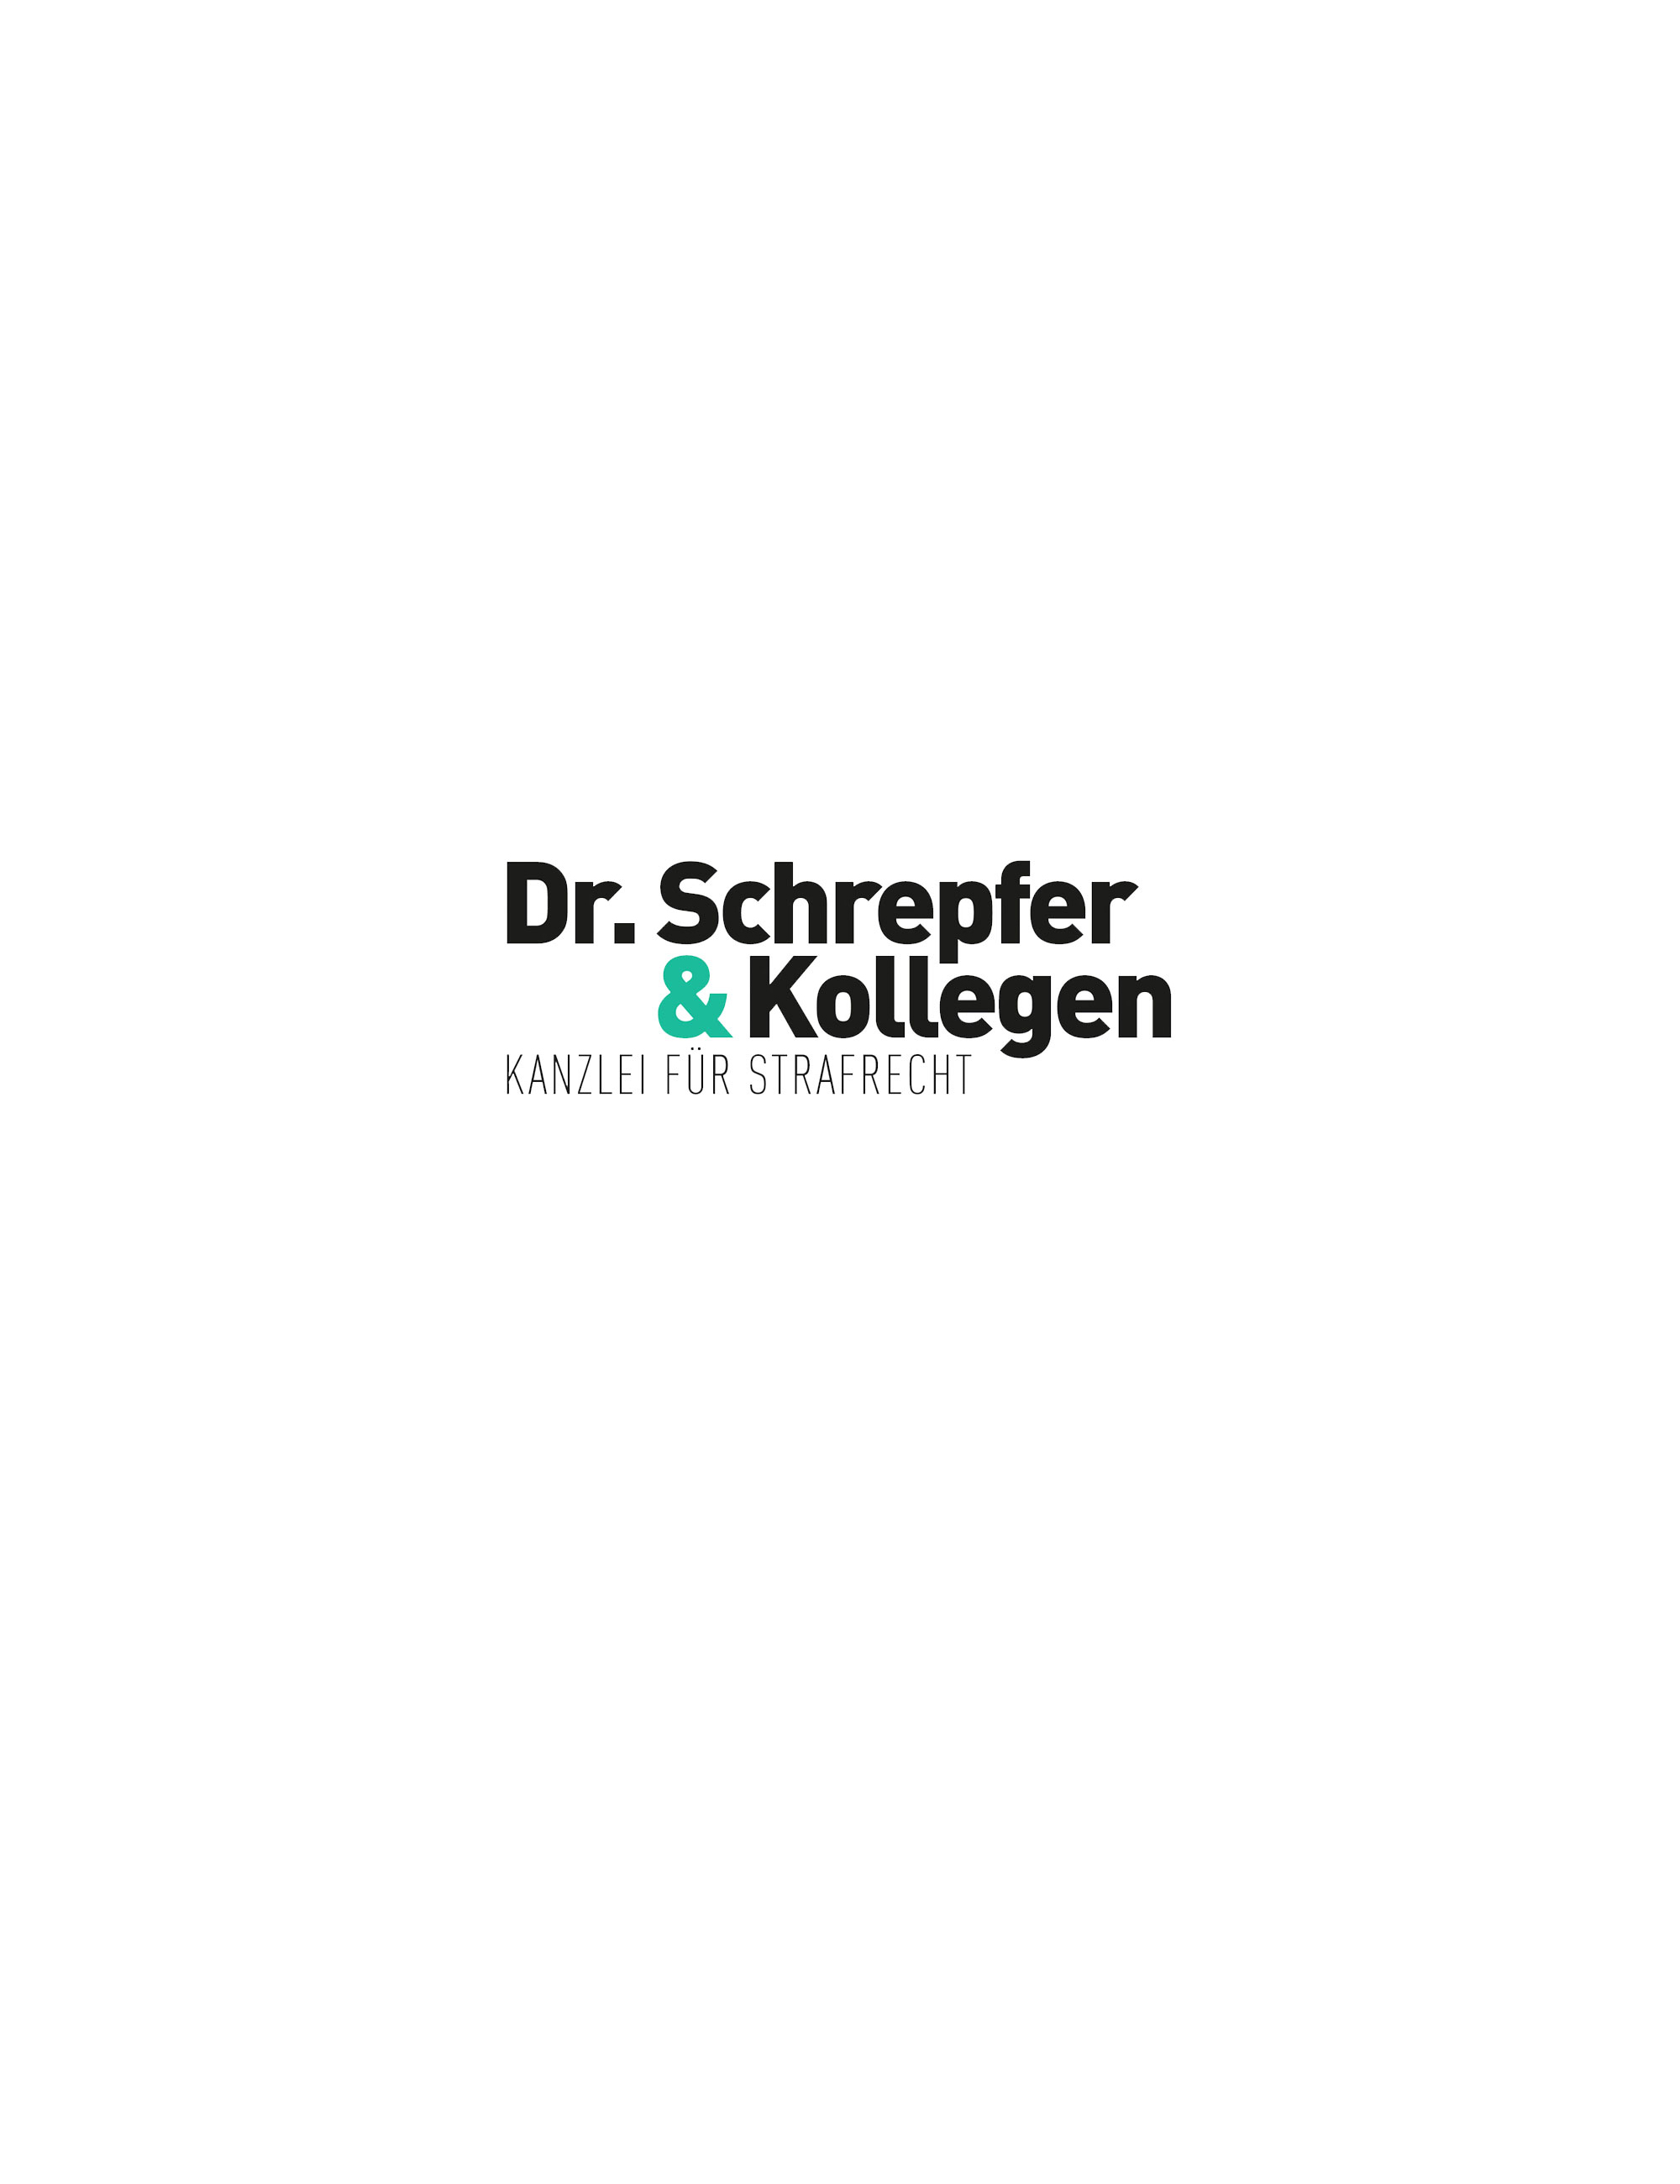 Dr. Schrepfer Kanzlei für Strafrecht Corporate Design Logo Markenkreation jos büro für Gestaltung Würzburg